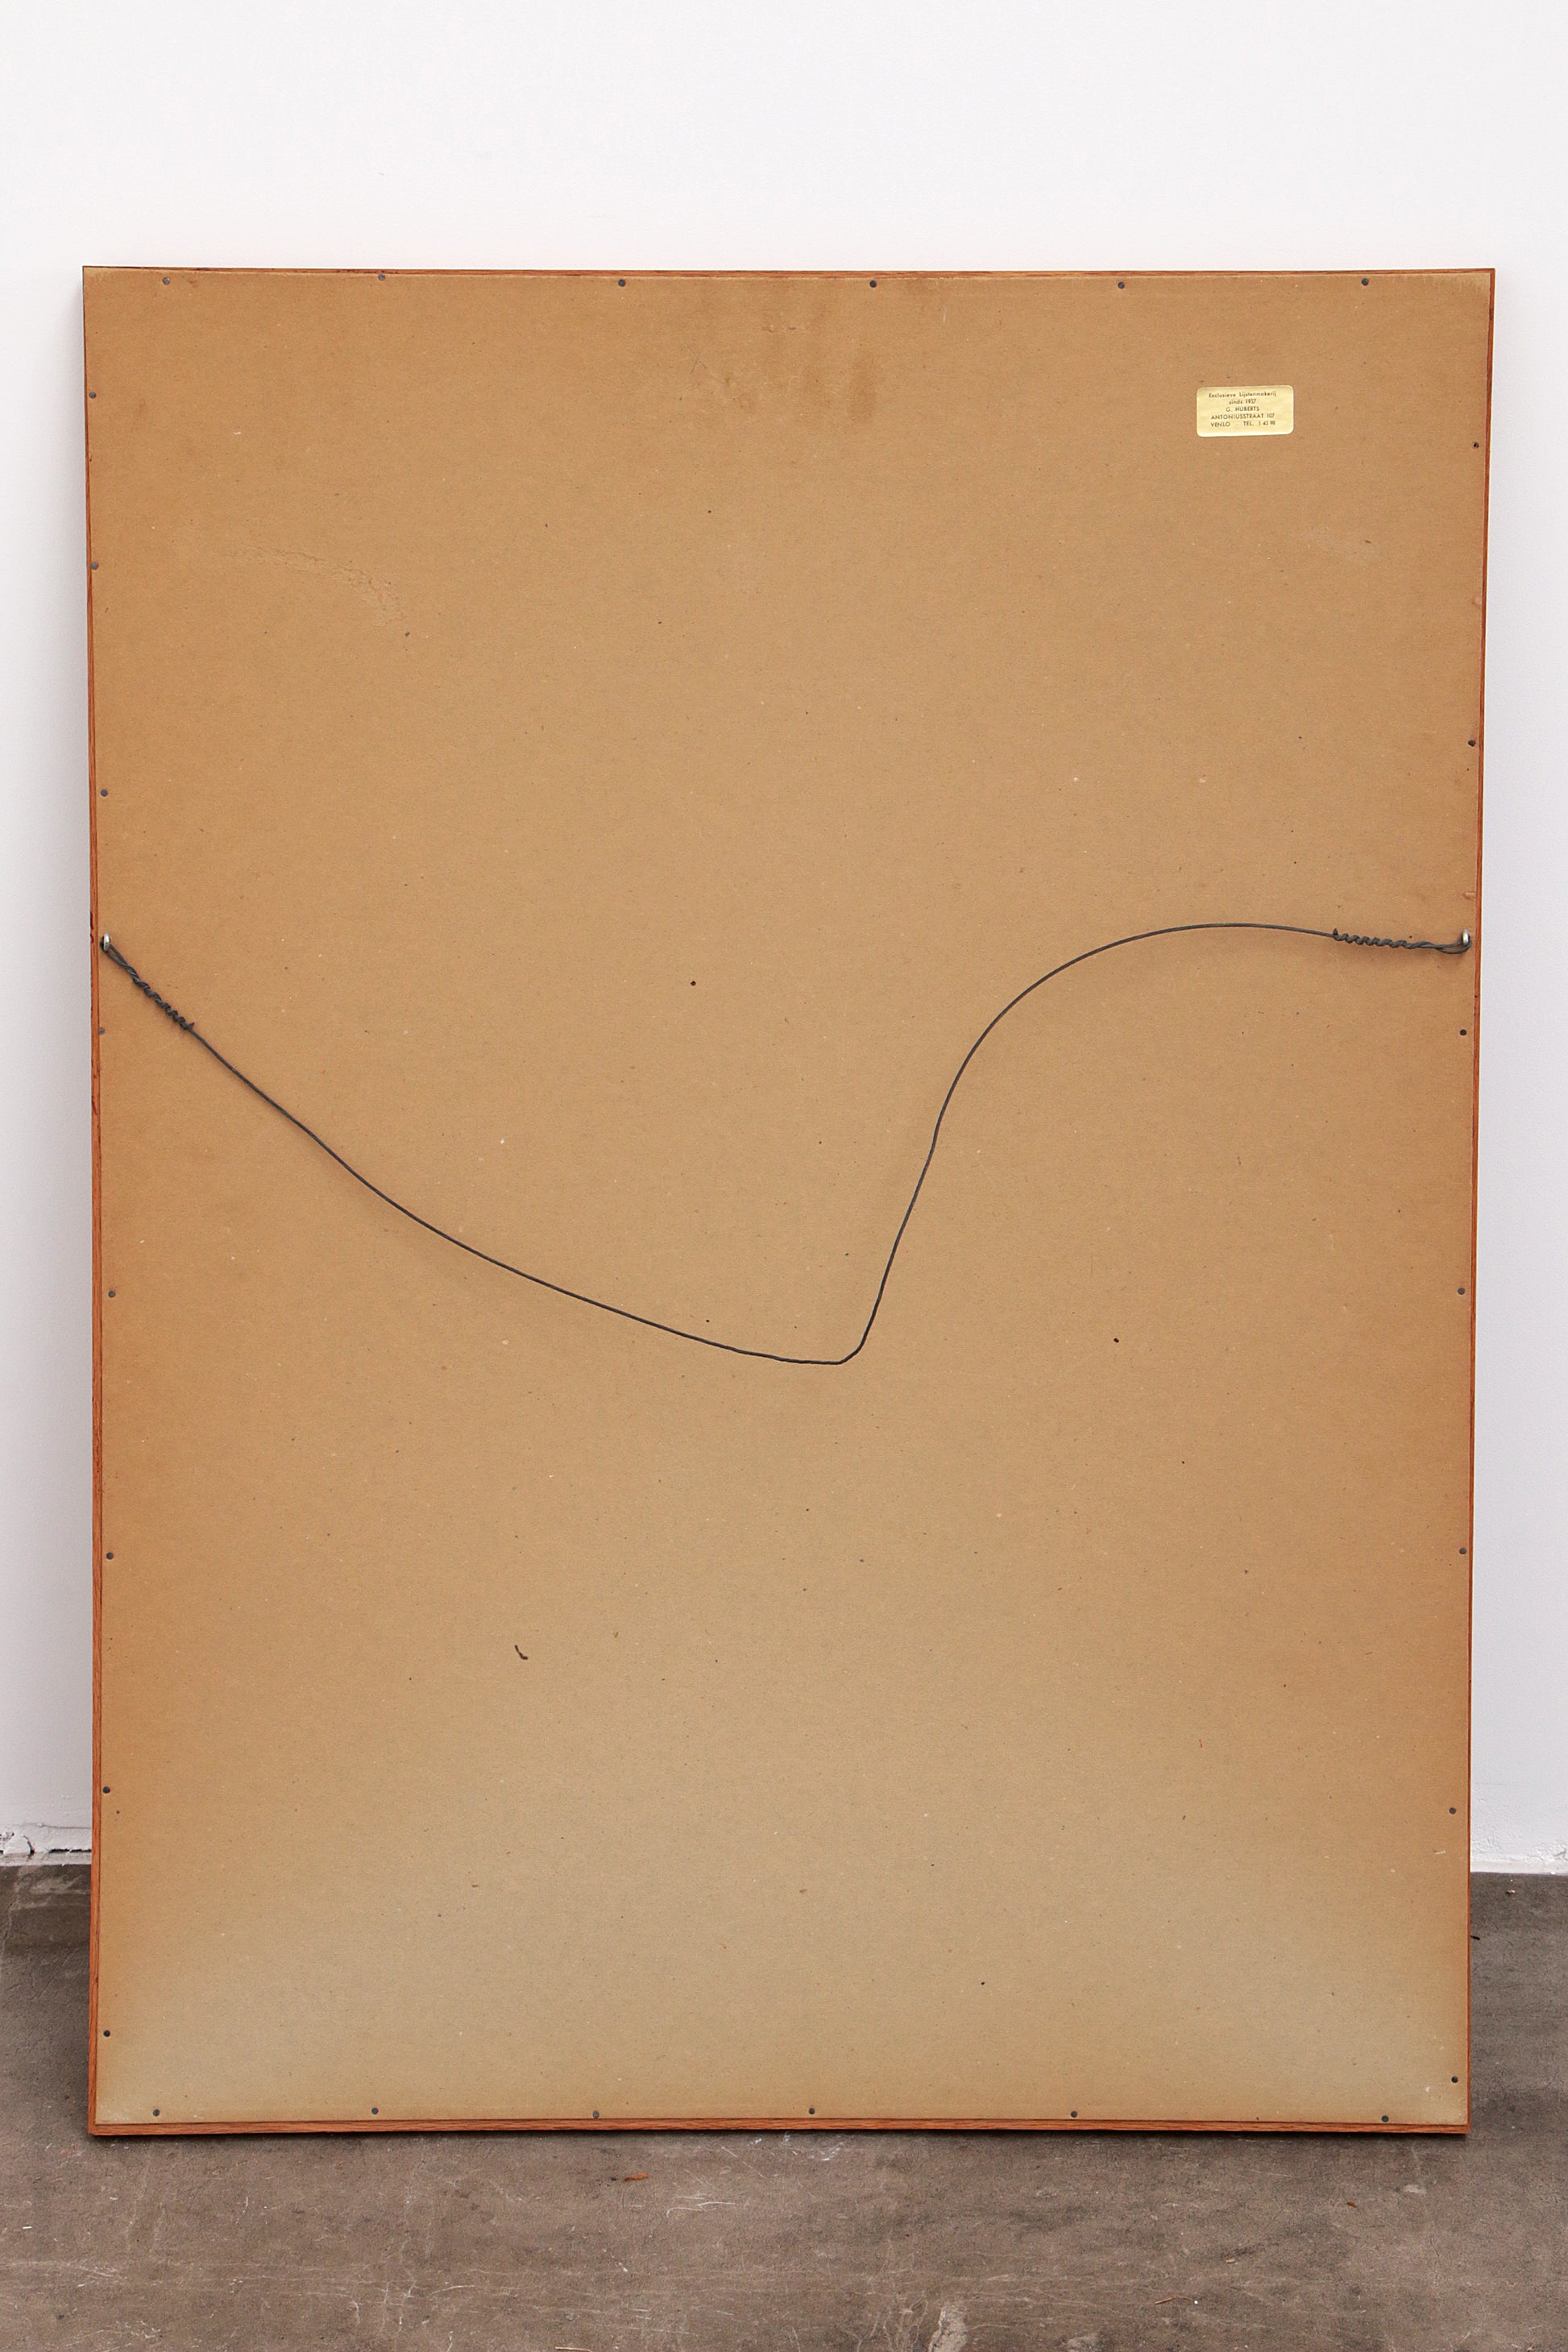 Fon Klement (1930-2000)  'Propagation', gesigneerd met 29/40 eigendruk,1971